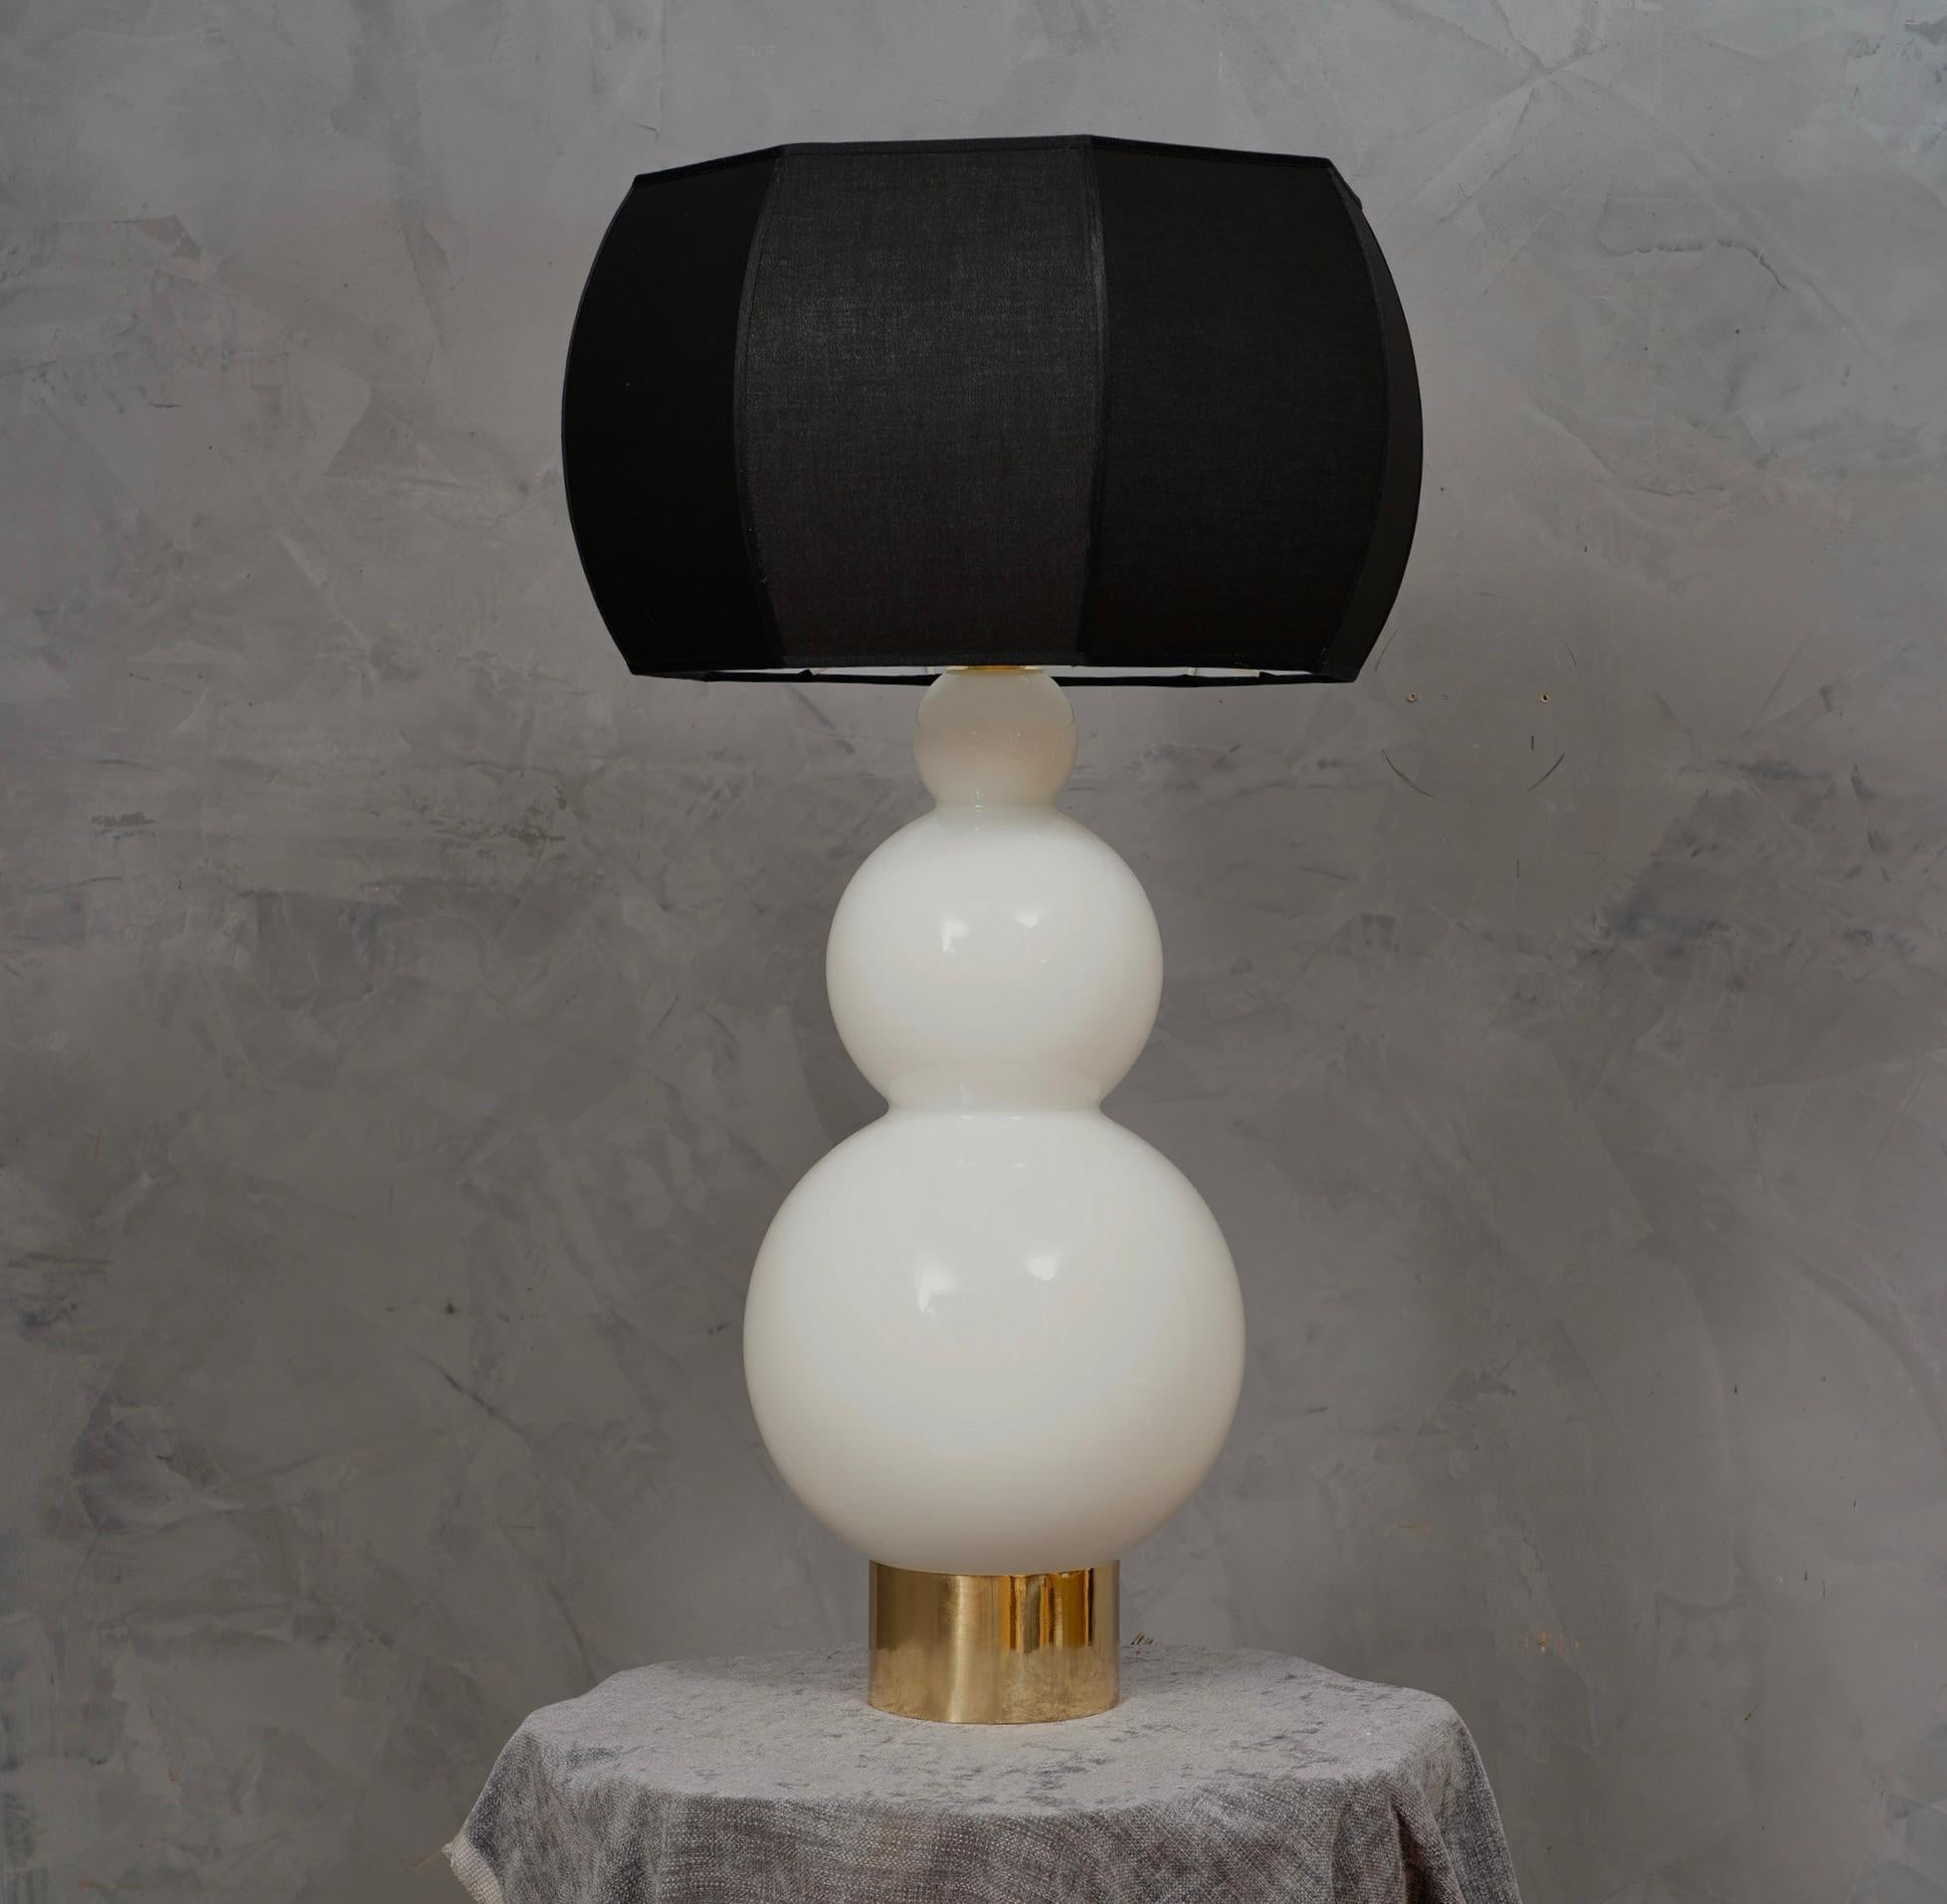 Kostbares und einzigartiges mundgeblasenes weißes Muranoglas, klassisches aber originelles Design mit einem starken Kontrast zwischen dem Weiß des Glases und dem Schwarz des Lampenschirms.

Die Leuchte besteht aus einem reichhaltigen zylindrischen